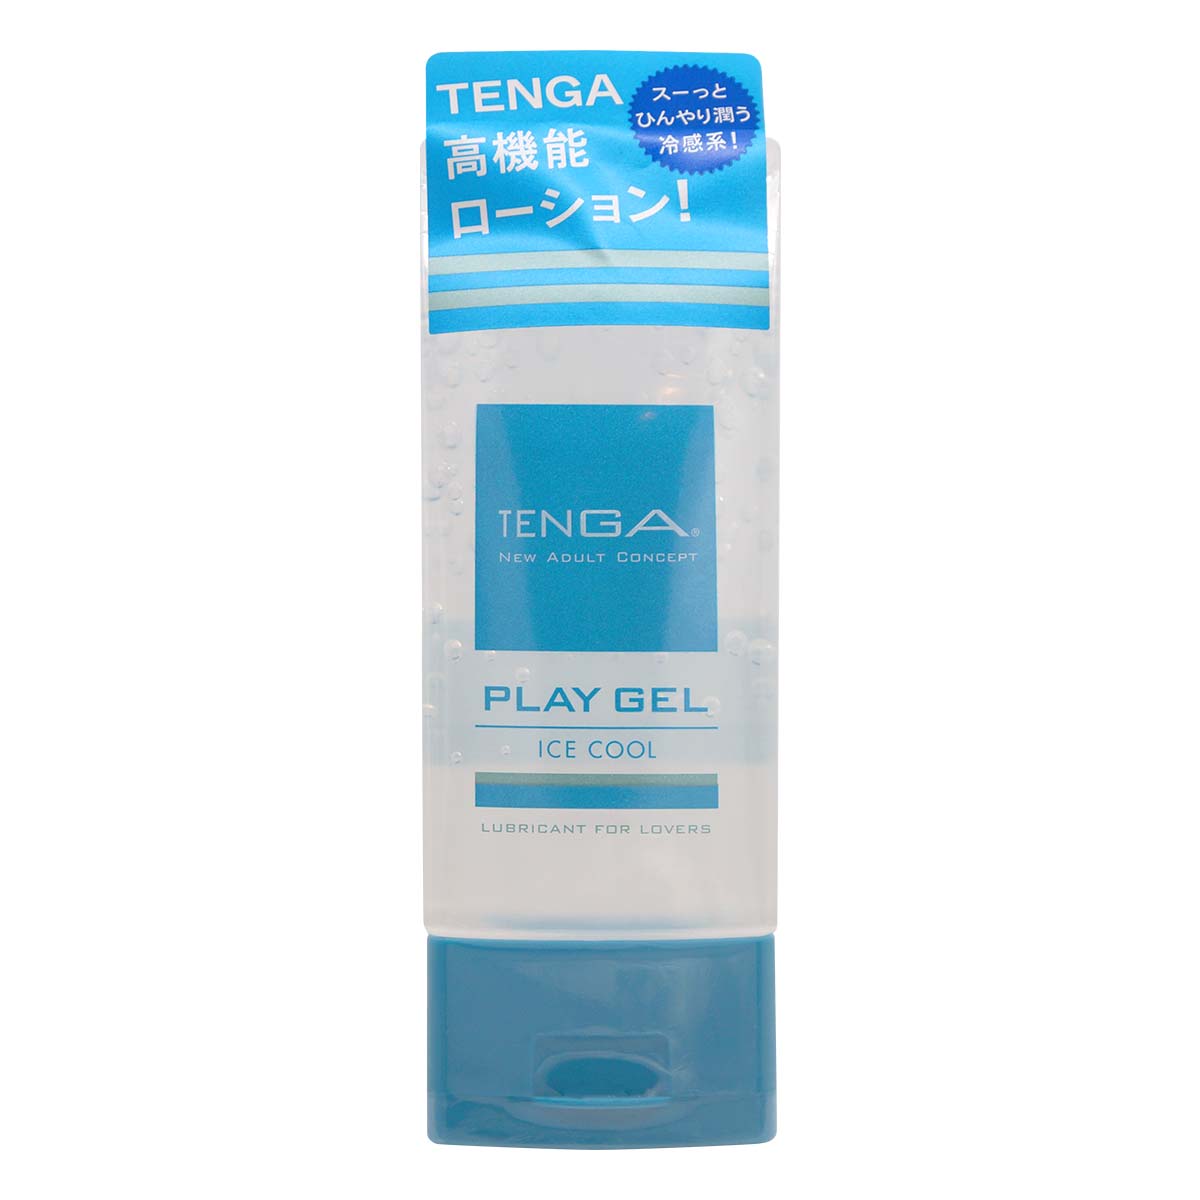 TENGA PLAY GEL ICE COOL 160ml 水基润滑剂 (短效期)-p_2